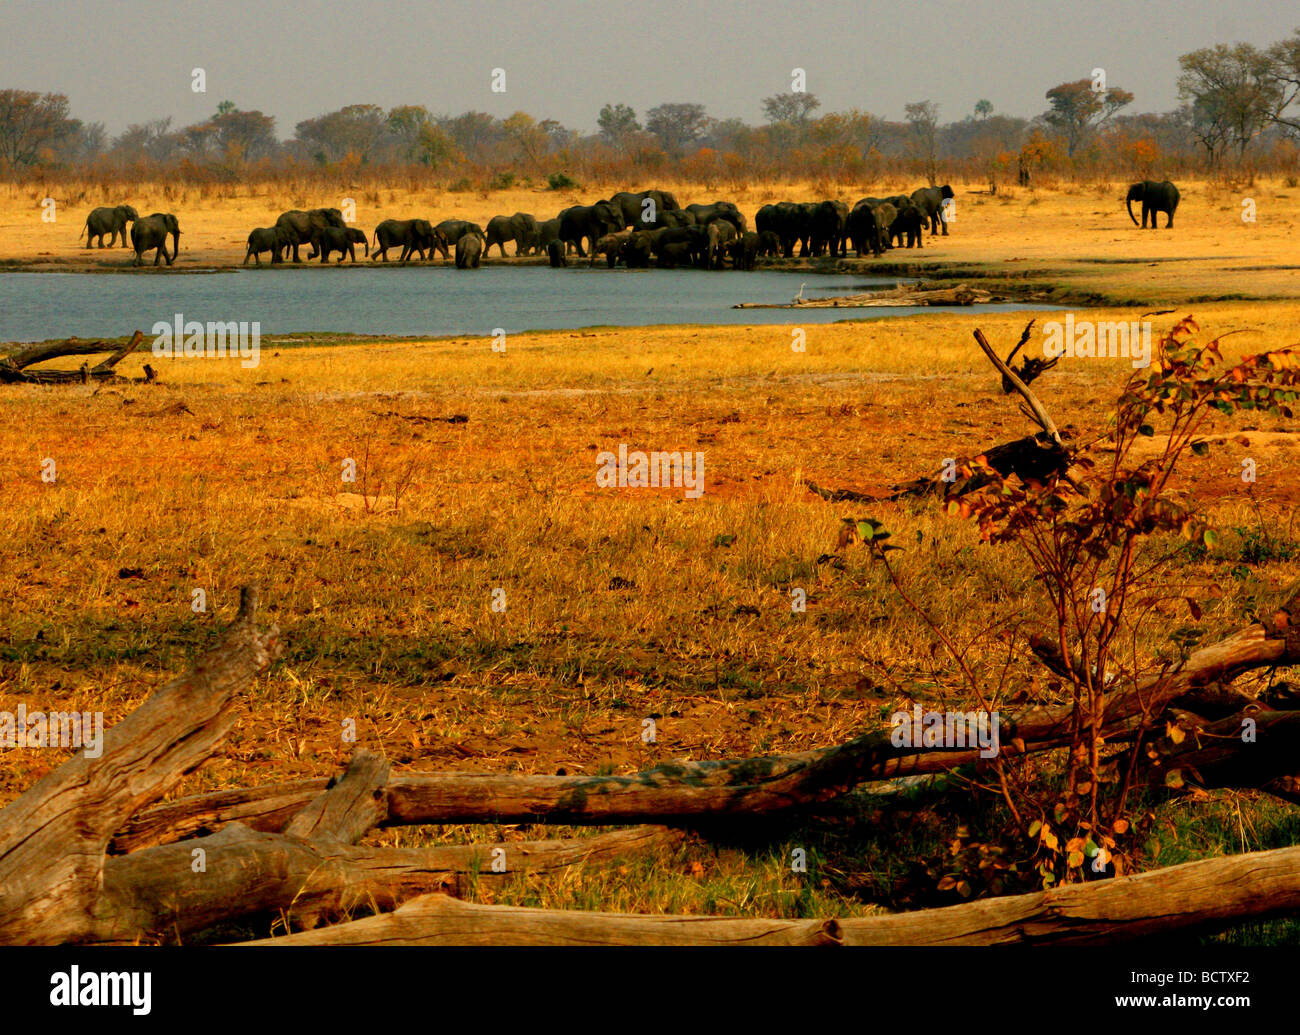 Les éléphants d'Afrique (Loxodonta africana) à l'eau, le parc national de Hwange, Zimbabwe Banque D'Images